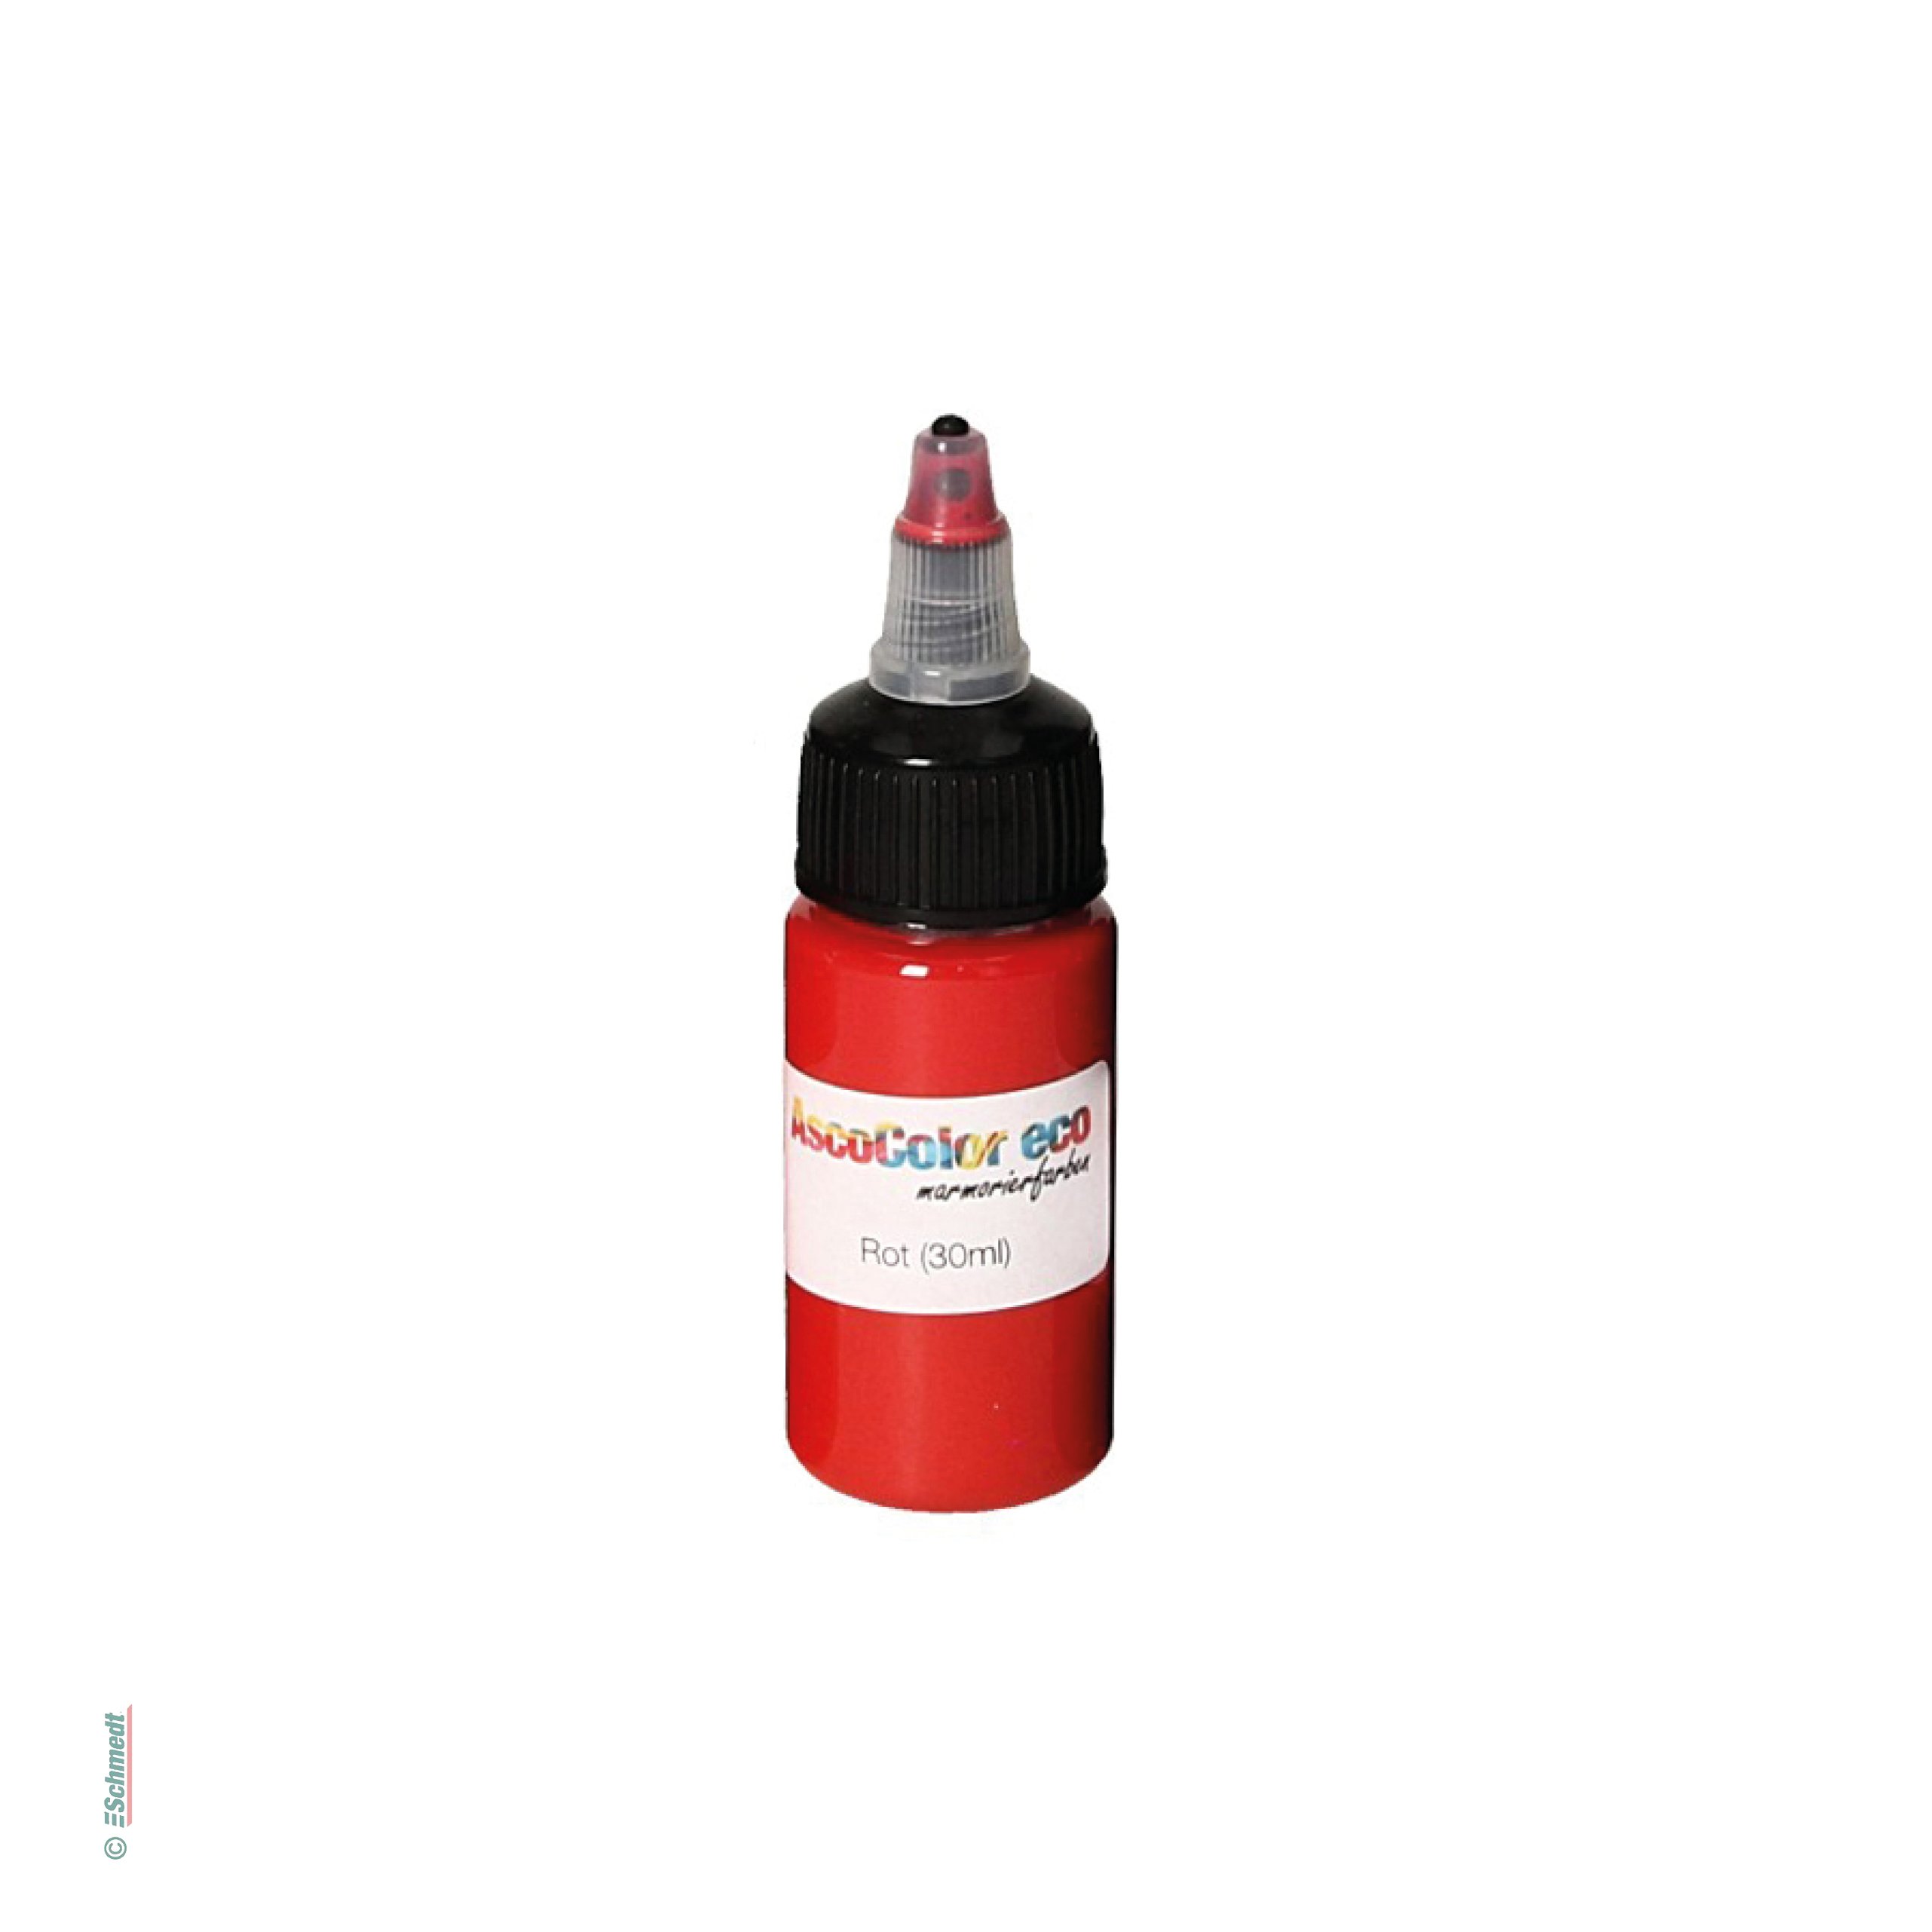 AscoColor eco - Pintura para marmolar - Color 103 - rojo - Contenido Botella / 30 ml - Aplicación: para crear sus propios papeles marmolados...